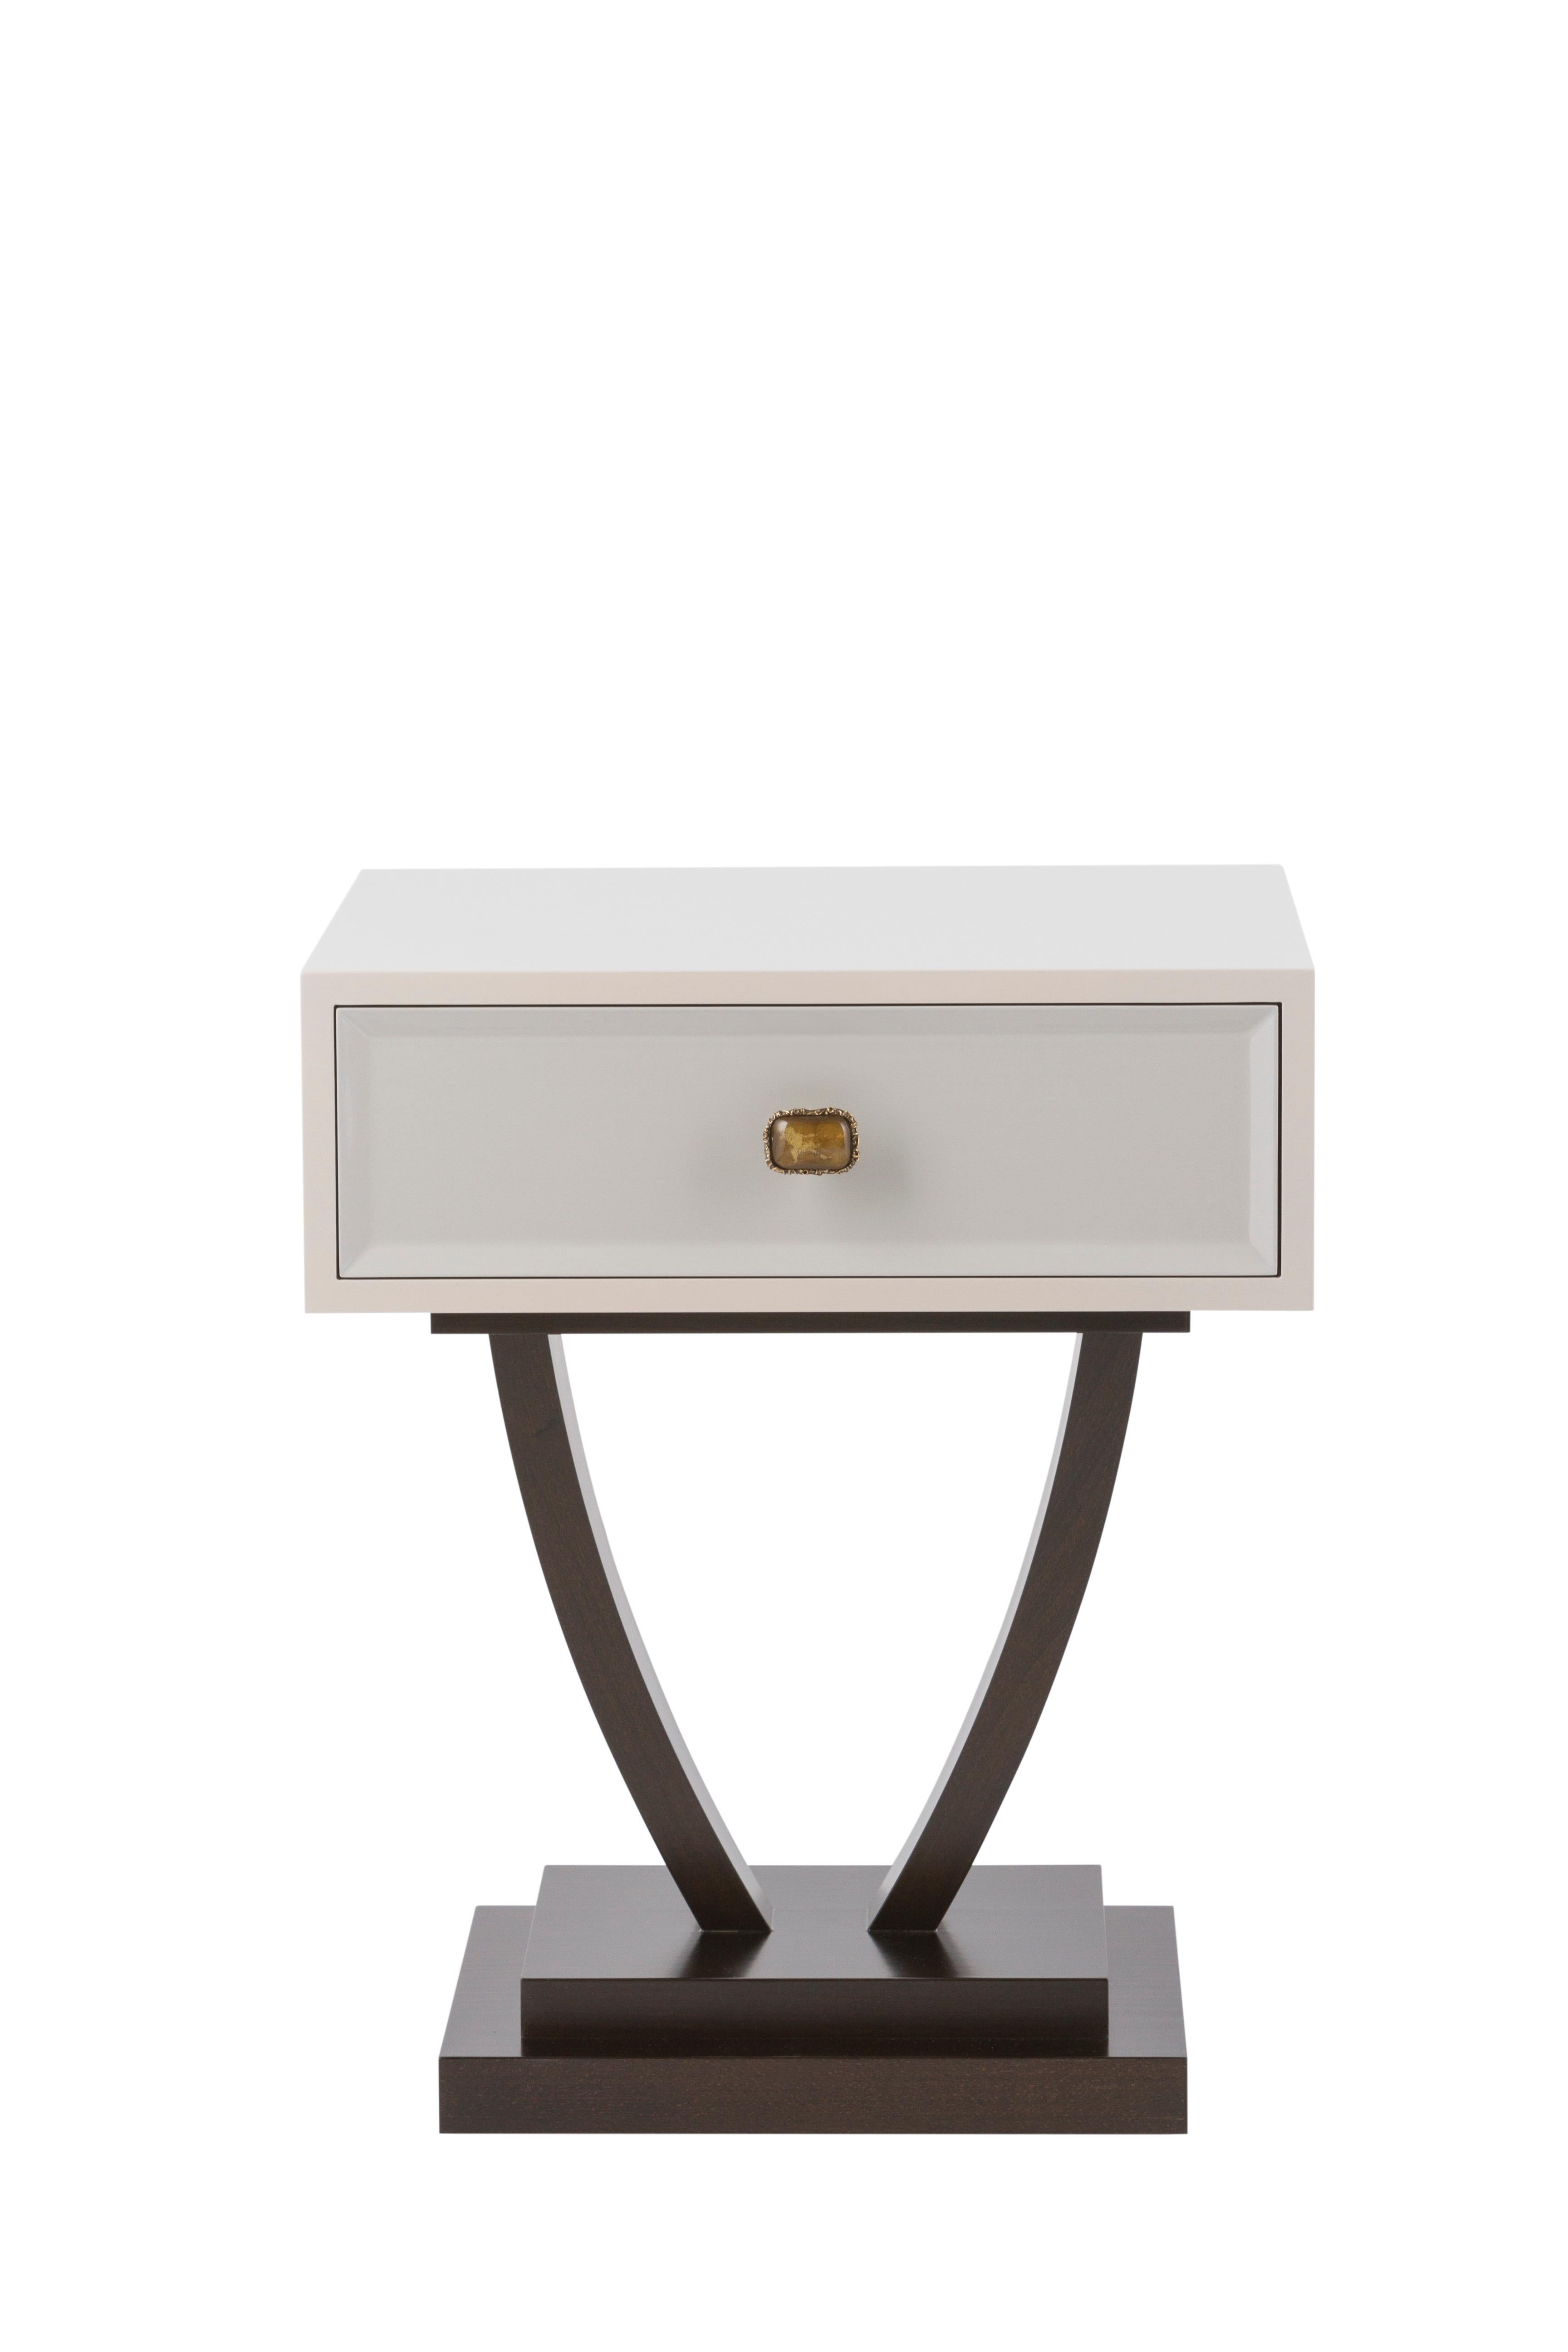 Table de chevet Bett, Collection S, fabriqué à la main au Portugal - Europe par GF Modern.

La table de chevet Bett offre un design intemporel à votre espace de vie. Beeche est une table de chevet en bois avec un tiroir laqué en beige et gris clair,